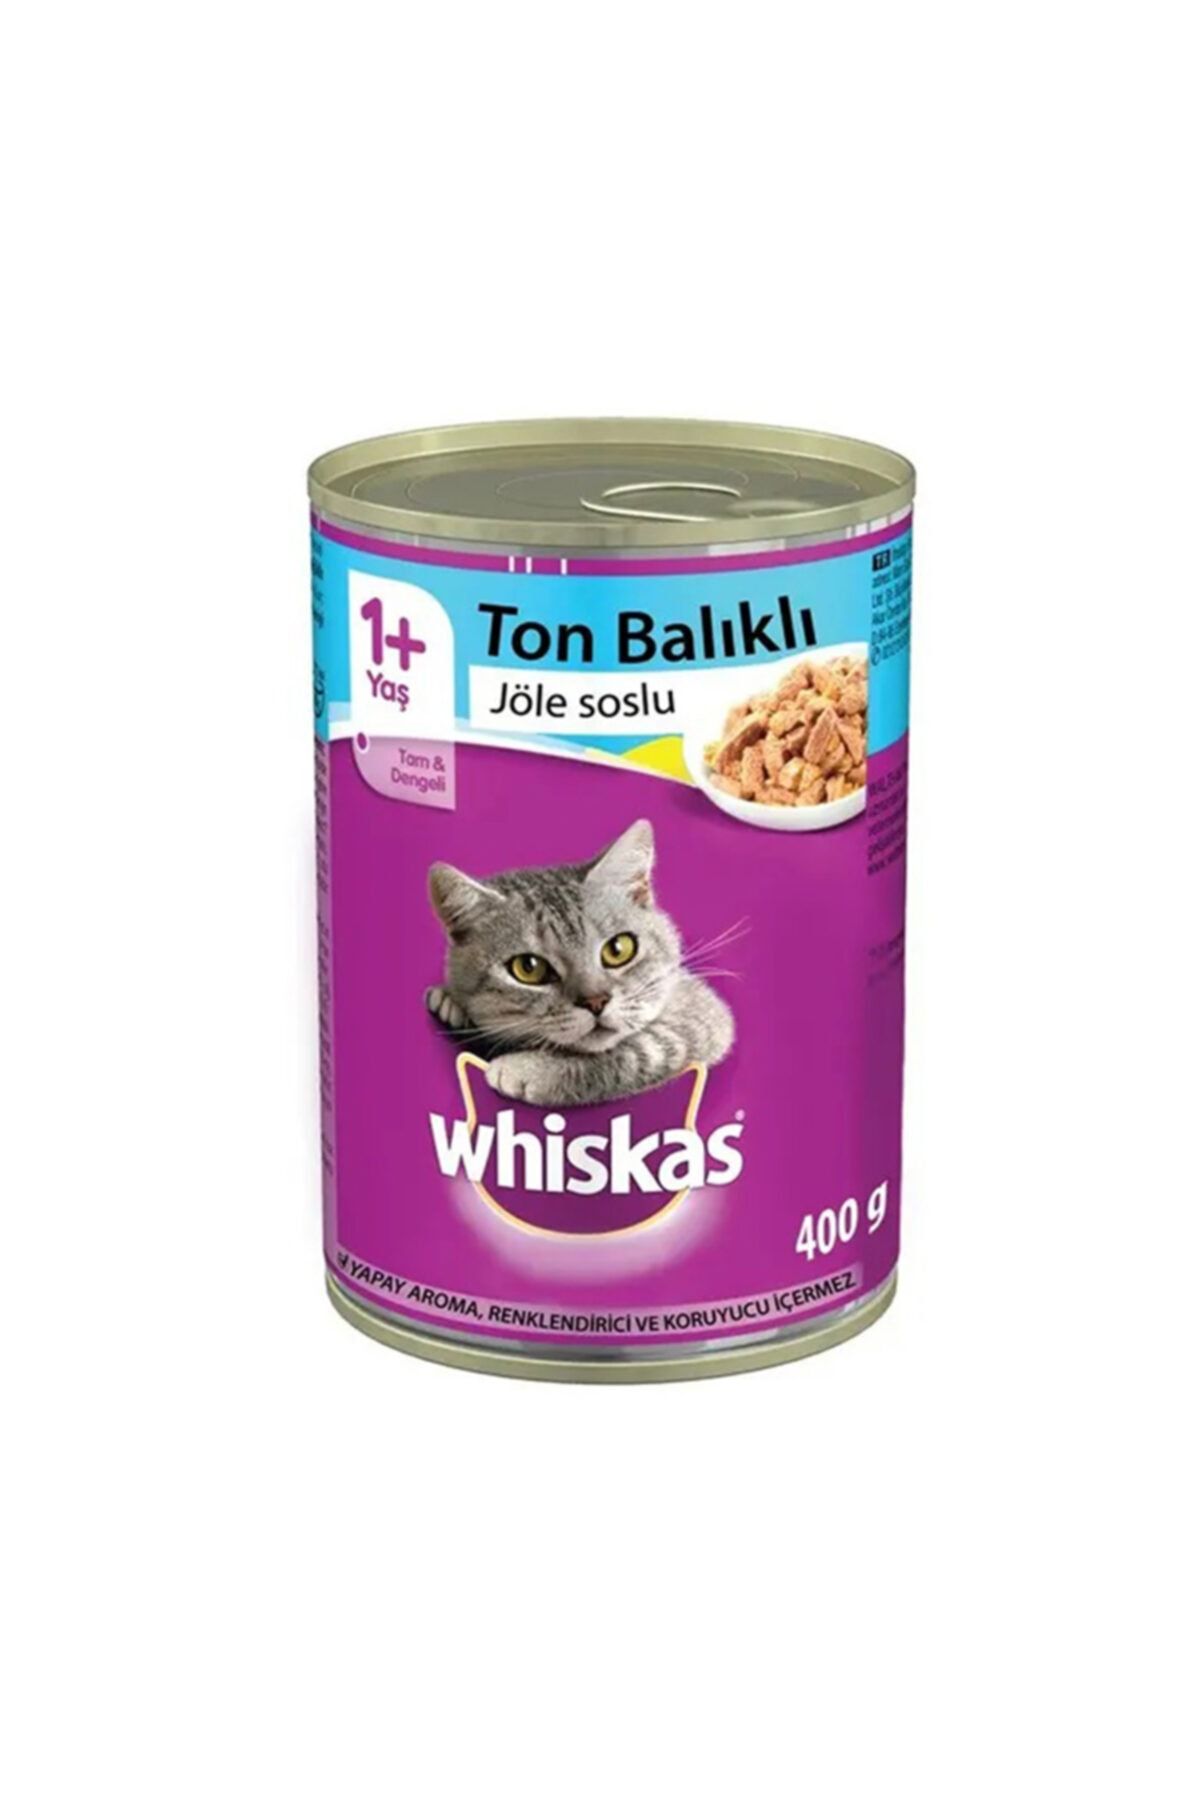 Whiskas Ton Balıklı Yaş Kedi Maması 400 Gr